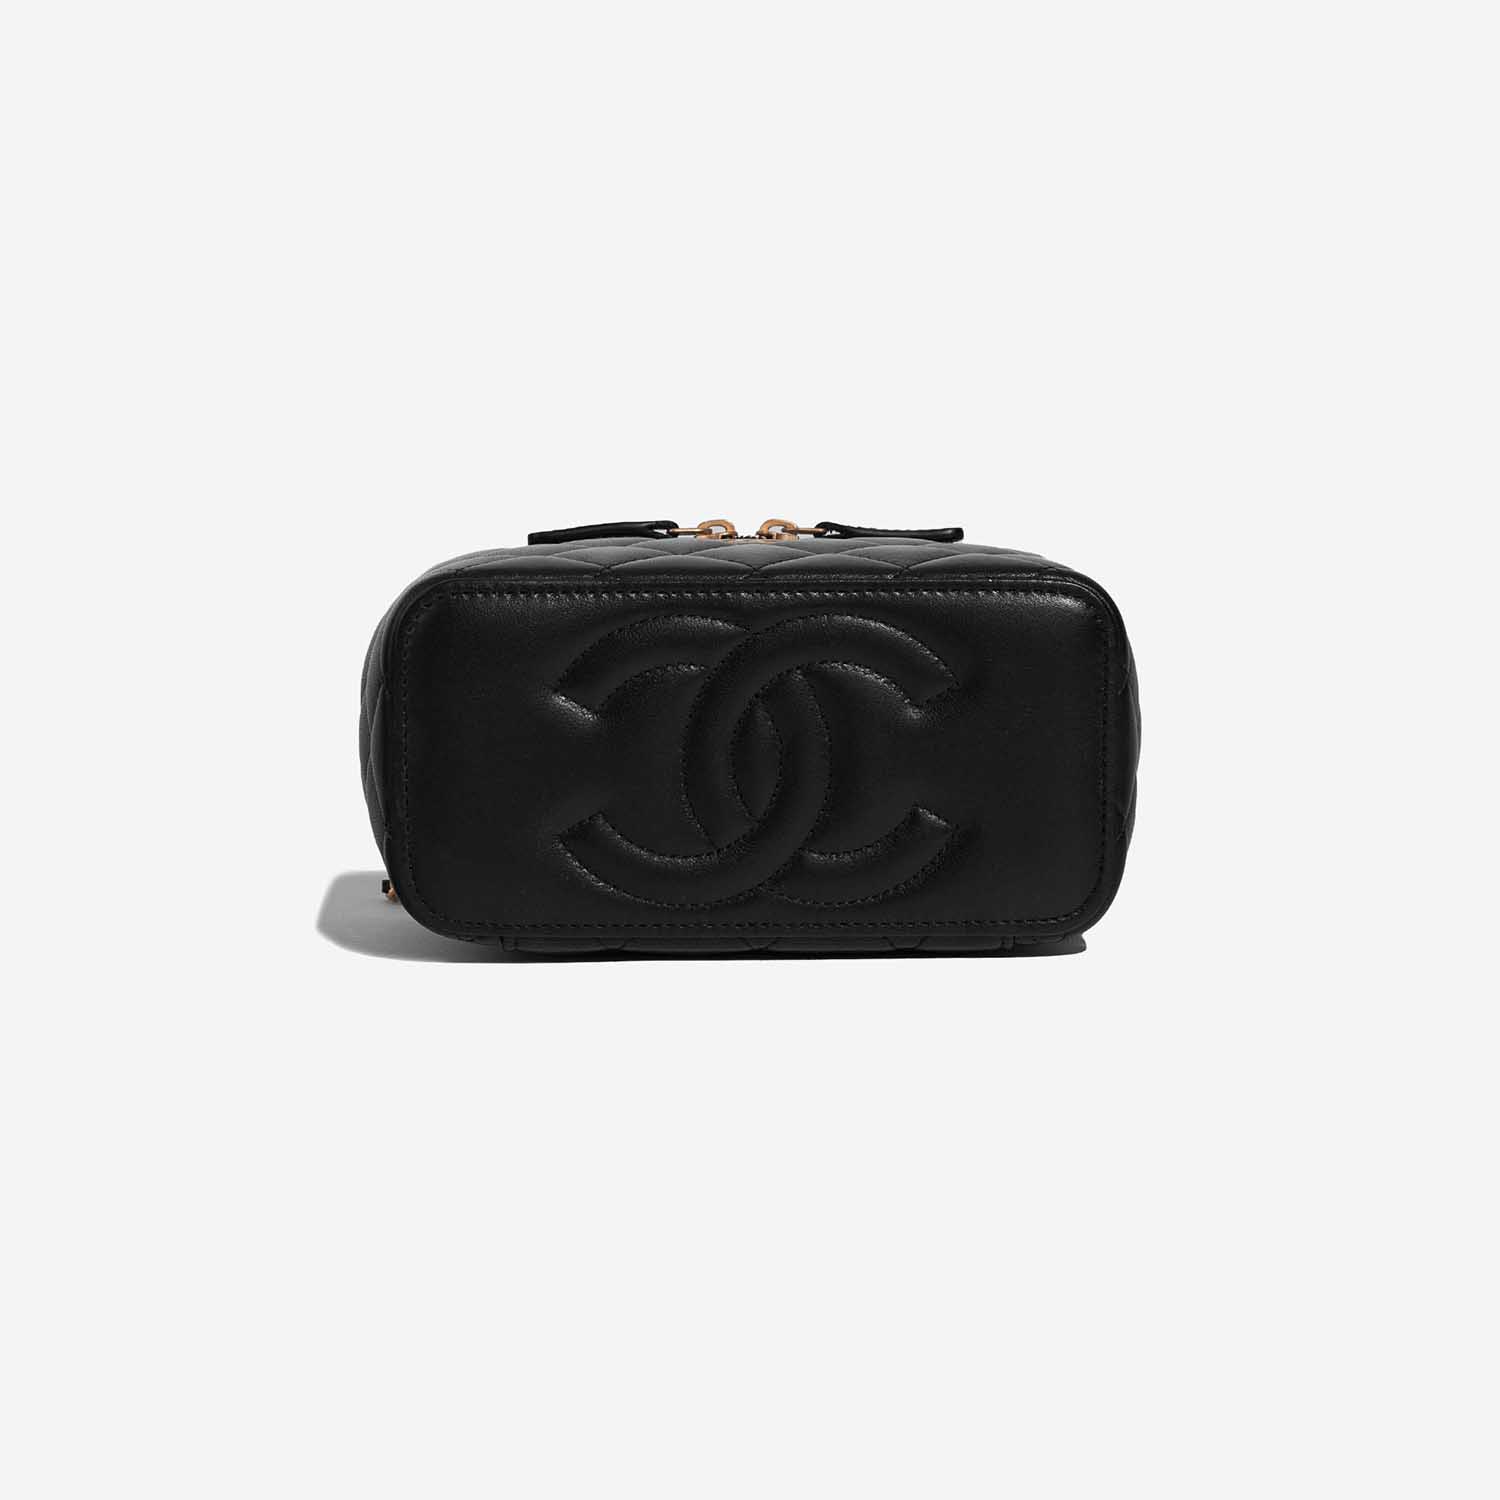 Chanel Vanity Small Black Bottom | Verkaufen Sie Ihre Designer-Tasche auf Saclab.com